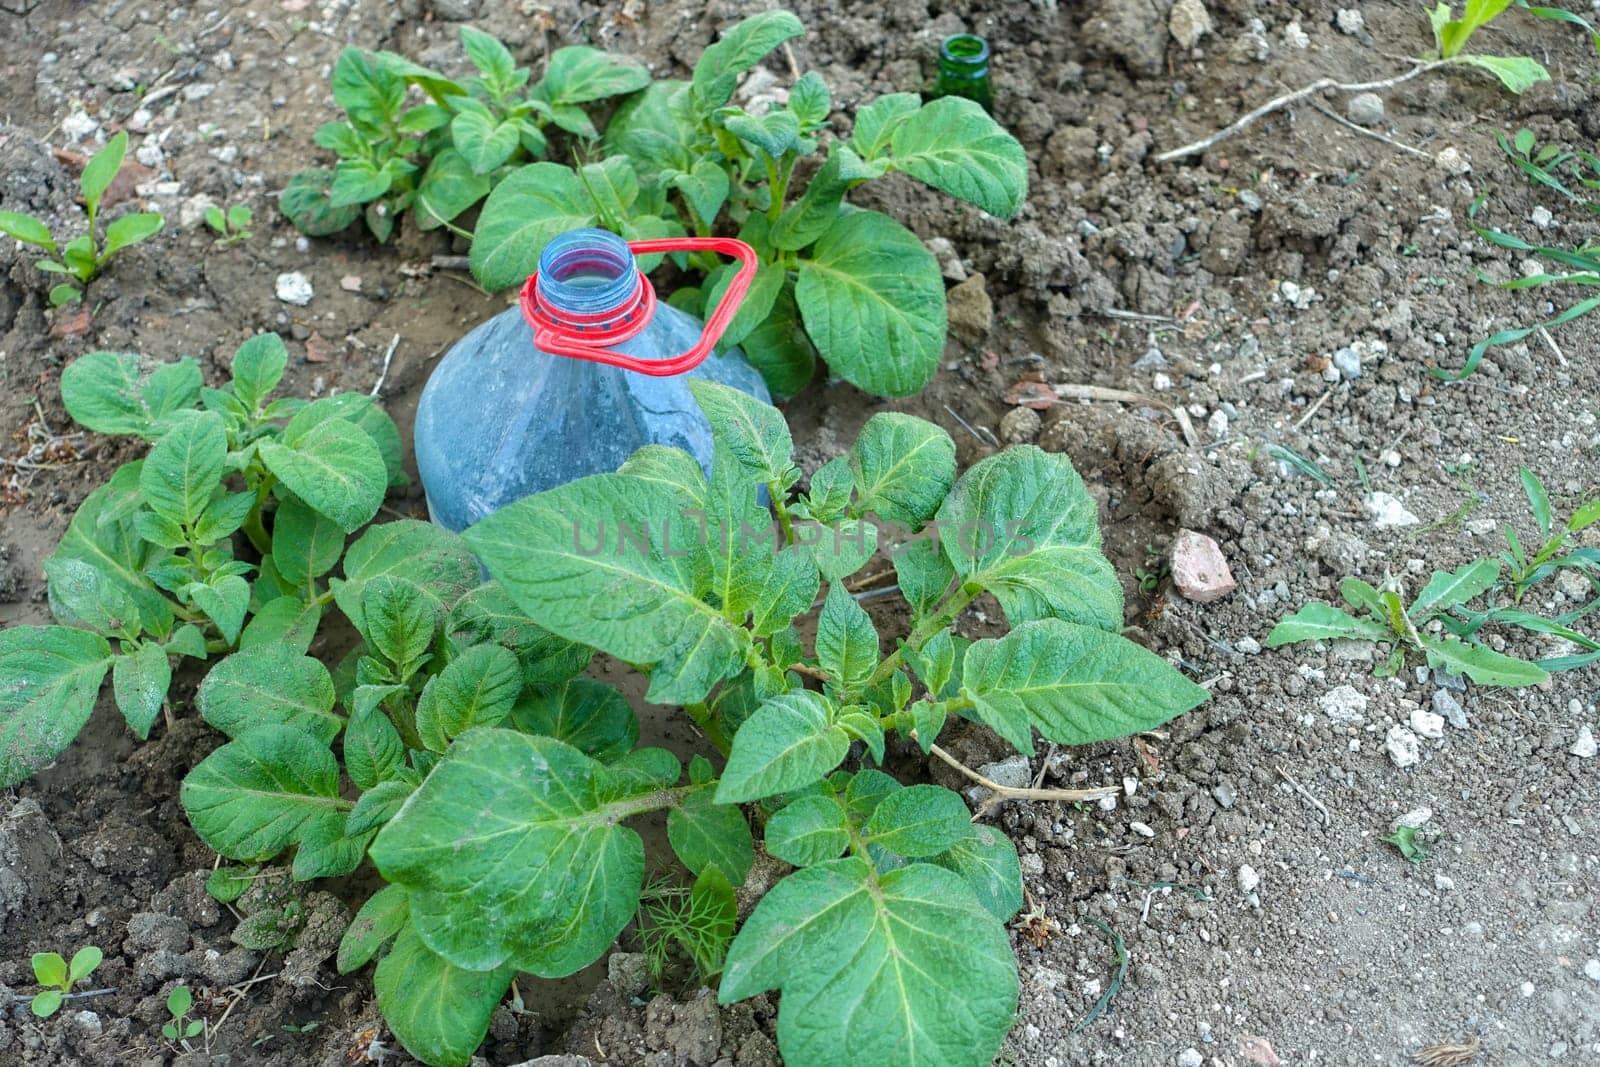 Potato cultivation using large pet bottles, potato cultivation by irrigating pet bottles, by nhatipoglu